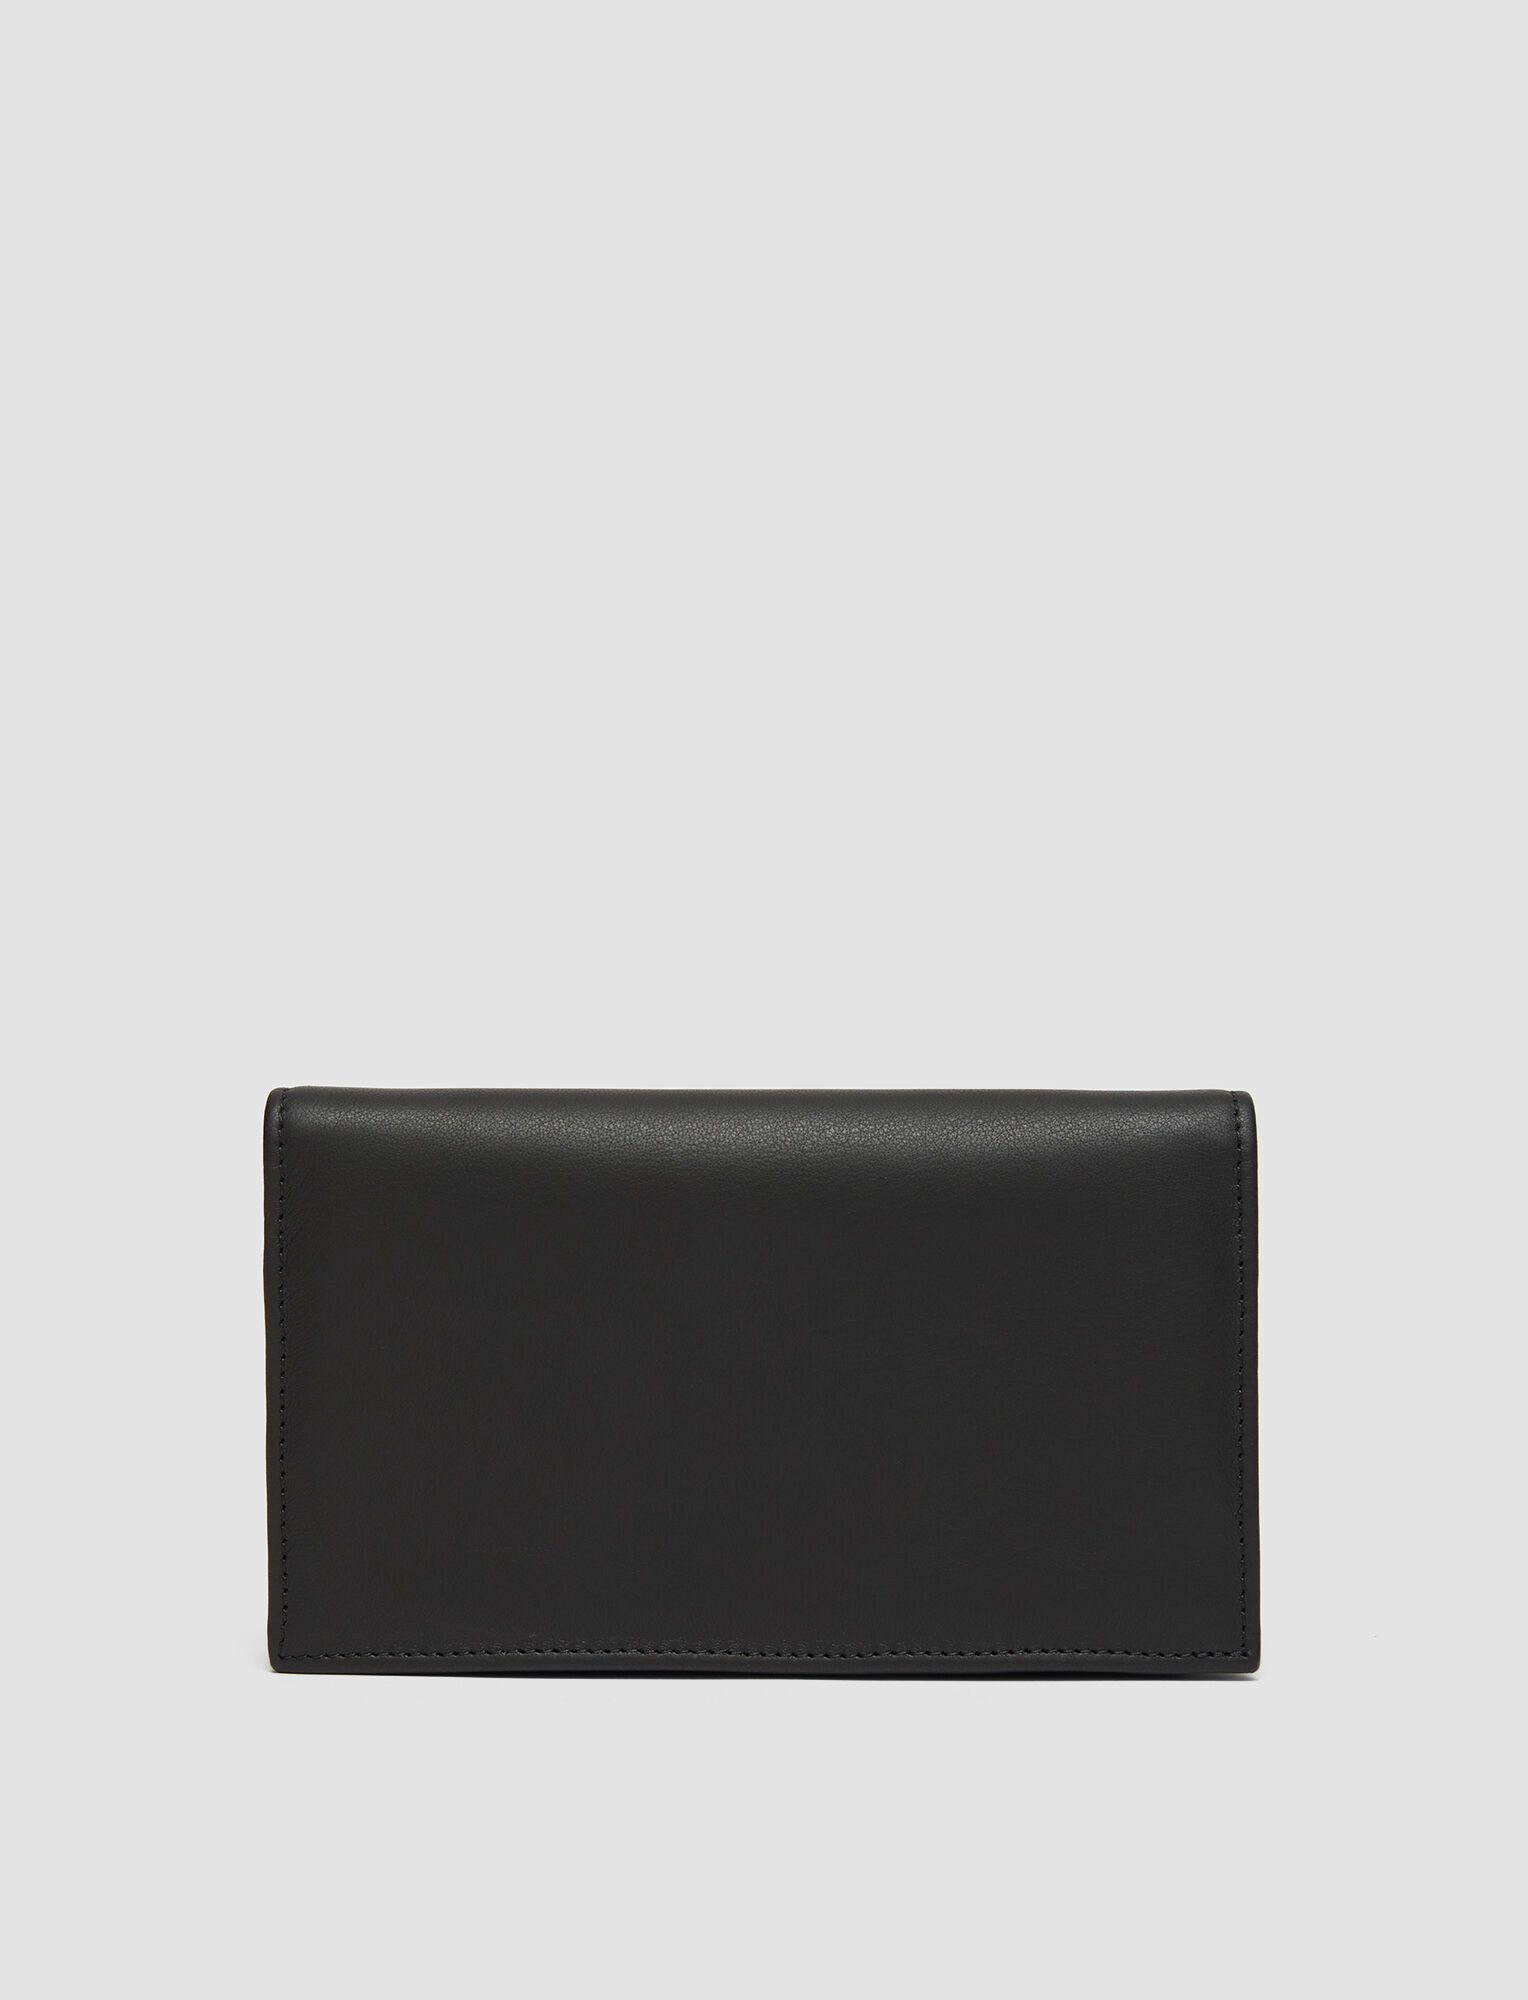 Joseph, Leather Shoulder Wallet, in Black